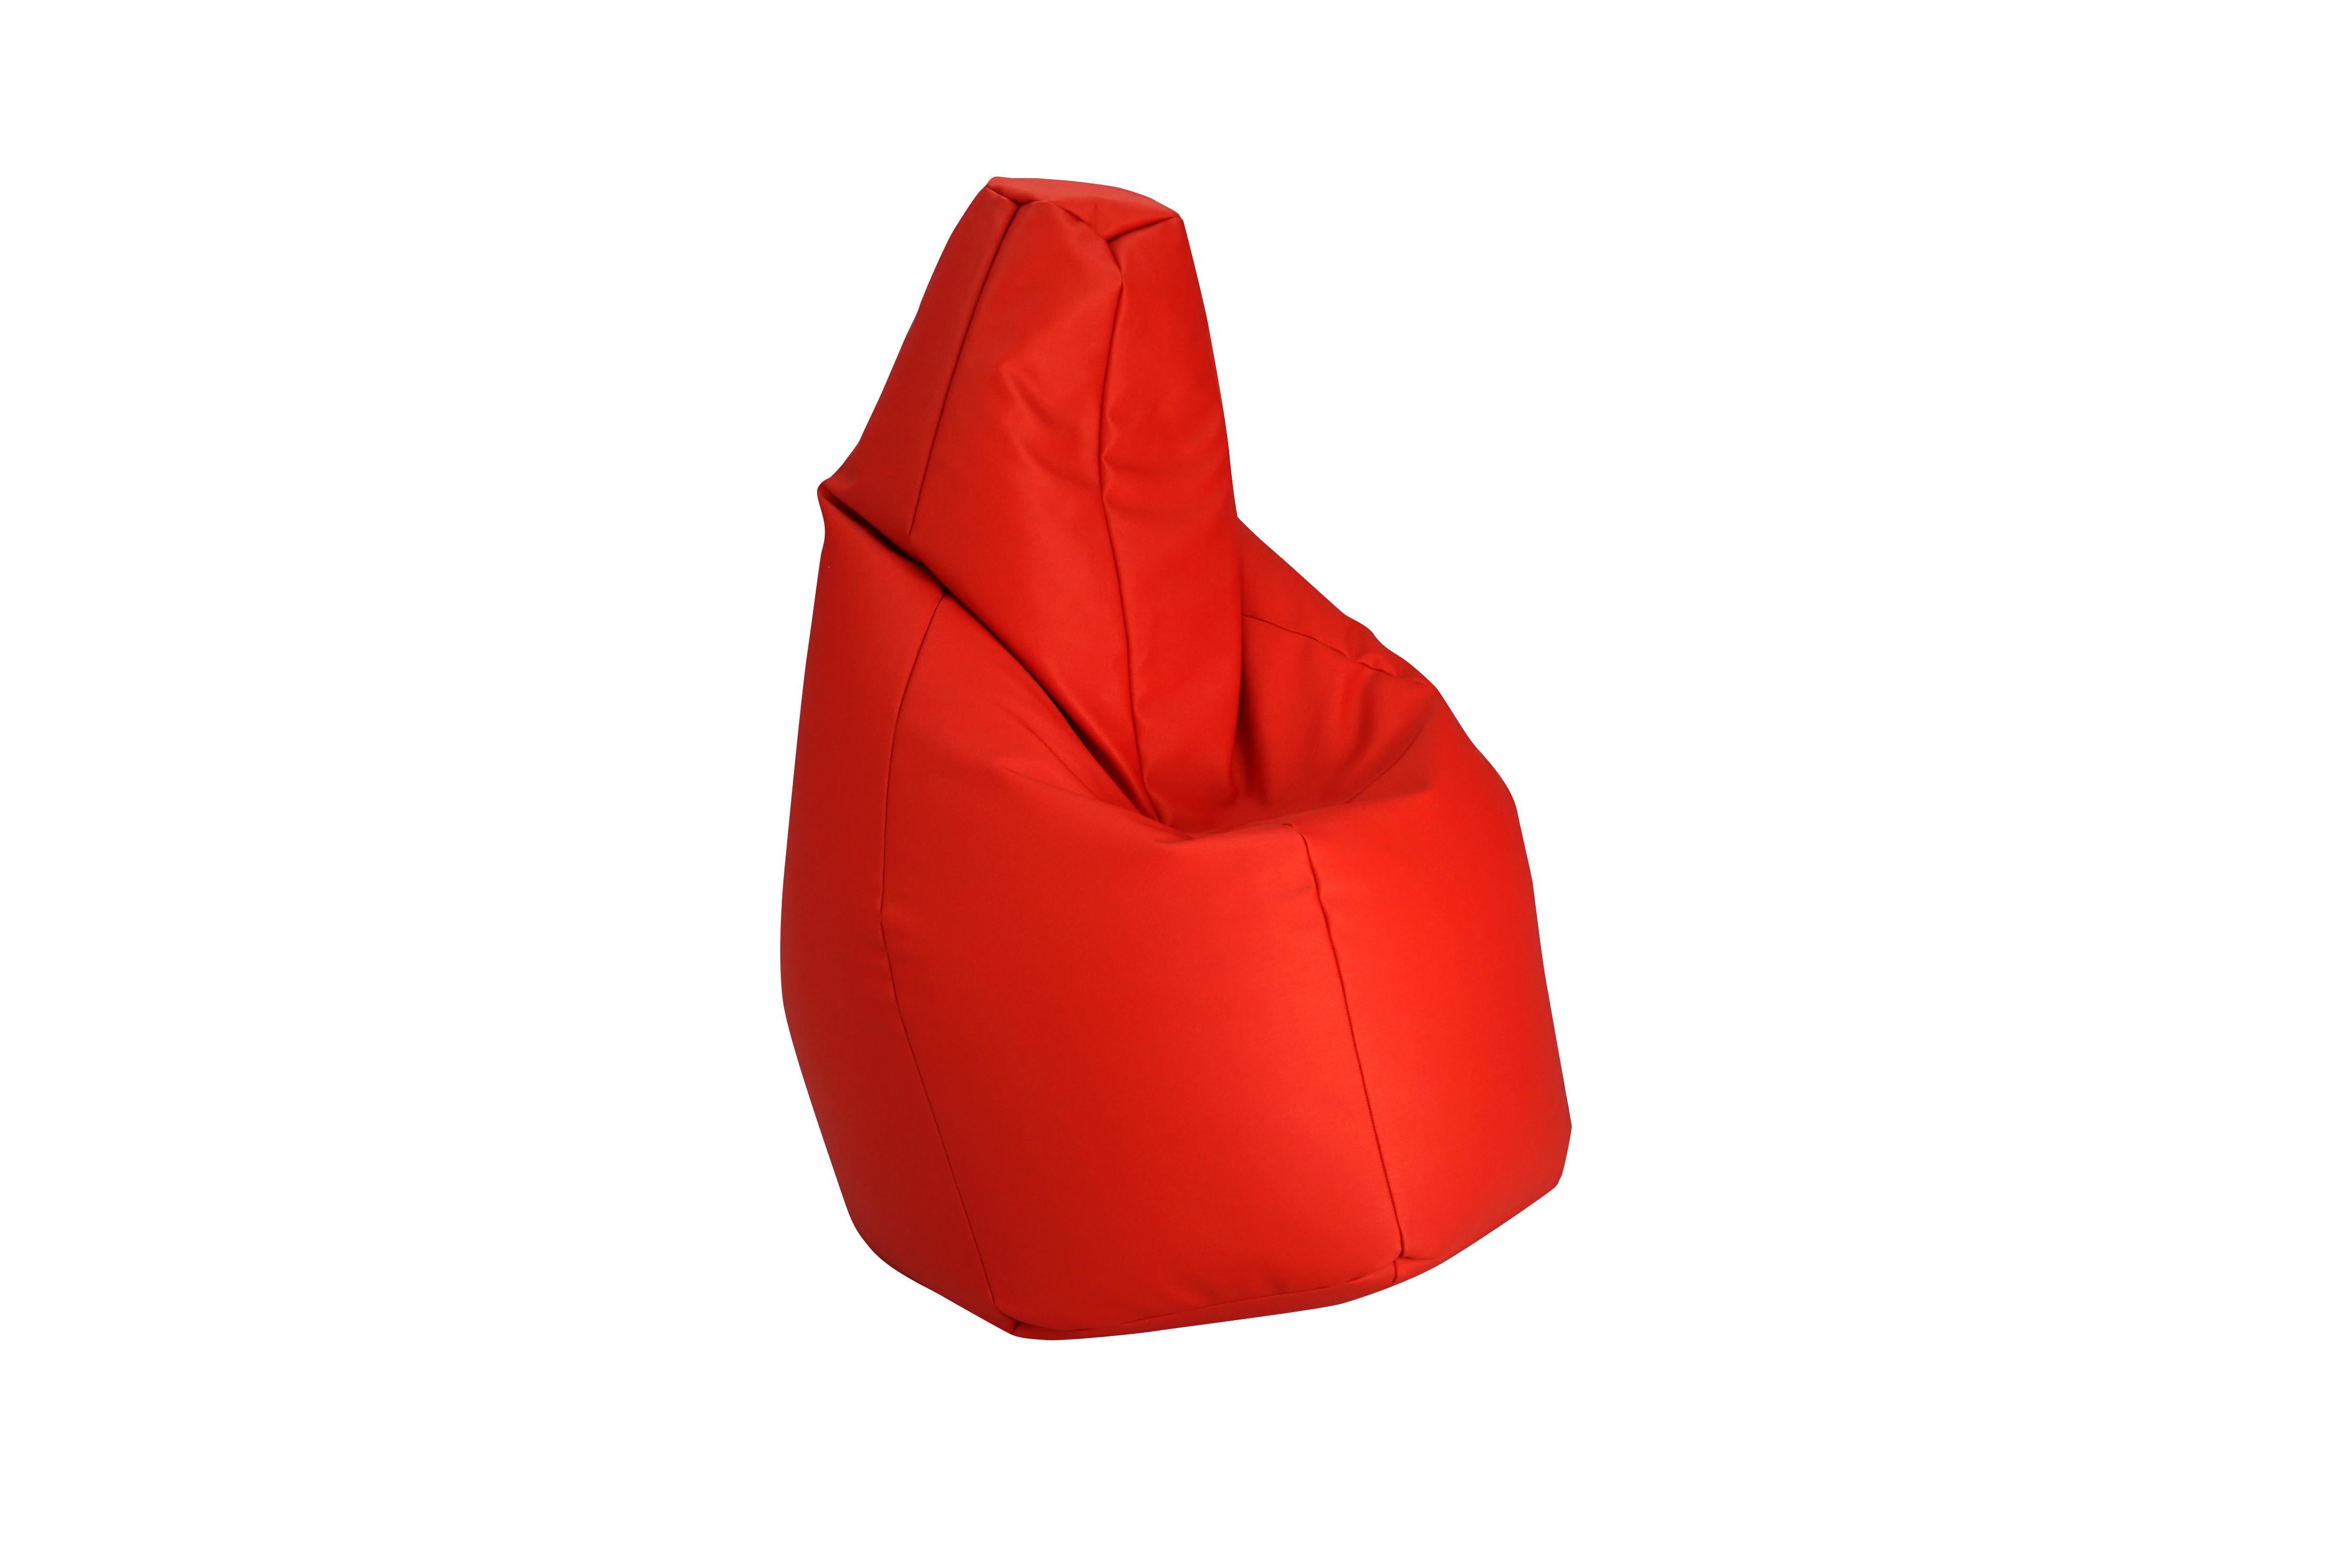 Customizable Zanotta Sacco Easy Chair by Gatti, Paolini, Teodoro For Sale 7